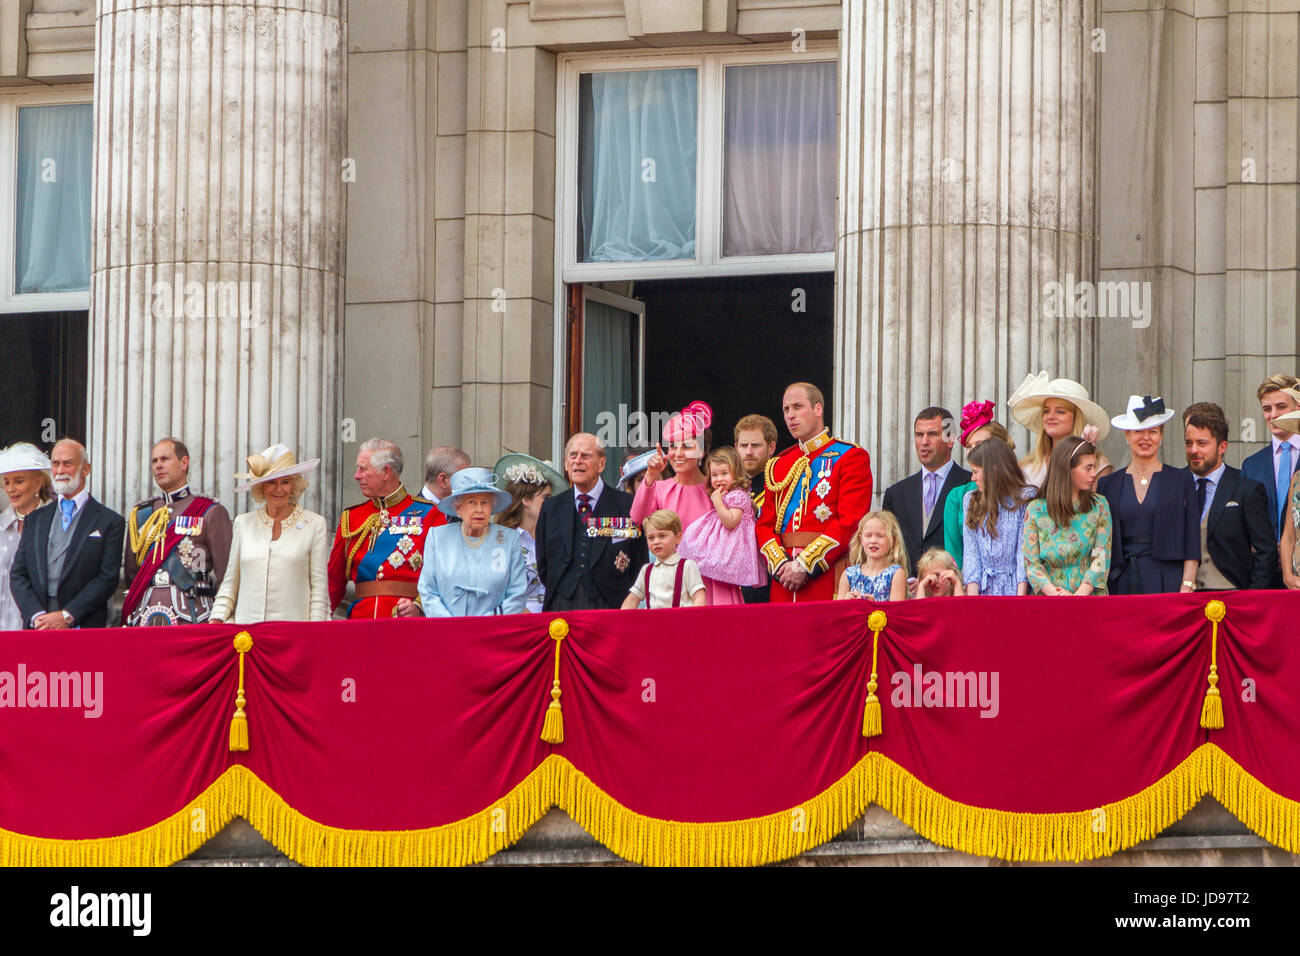 Königliche Familie versammelten sich auf dem Balkon von Buckingham Palace, kurz nach dem Queens Geburtstag Parade, London 2017 Stockfoto